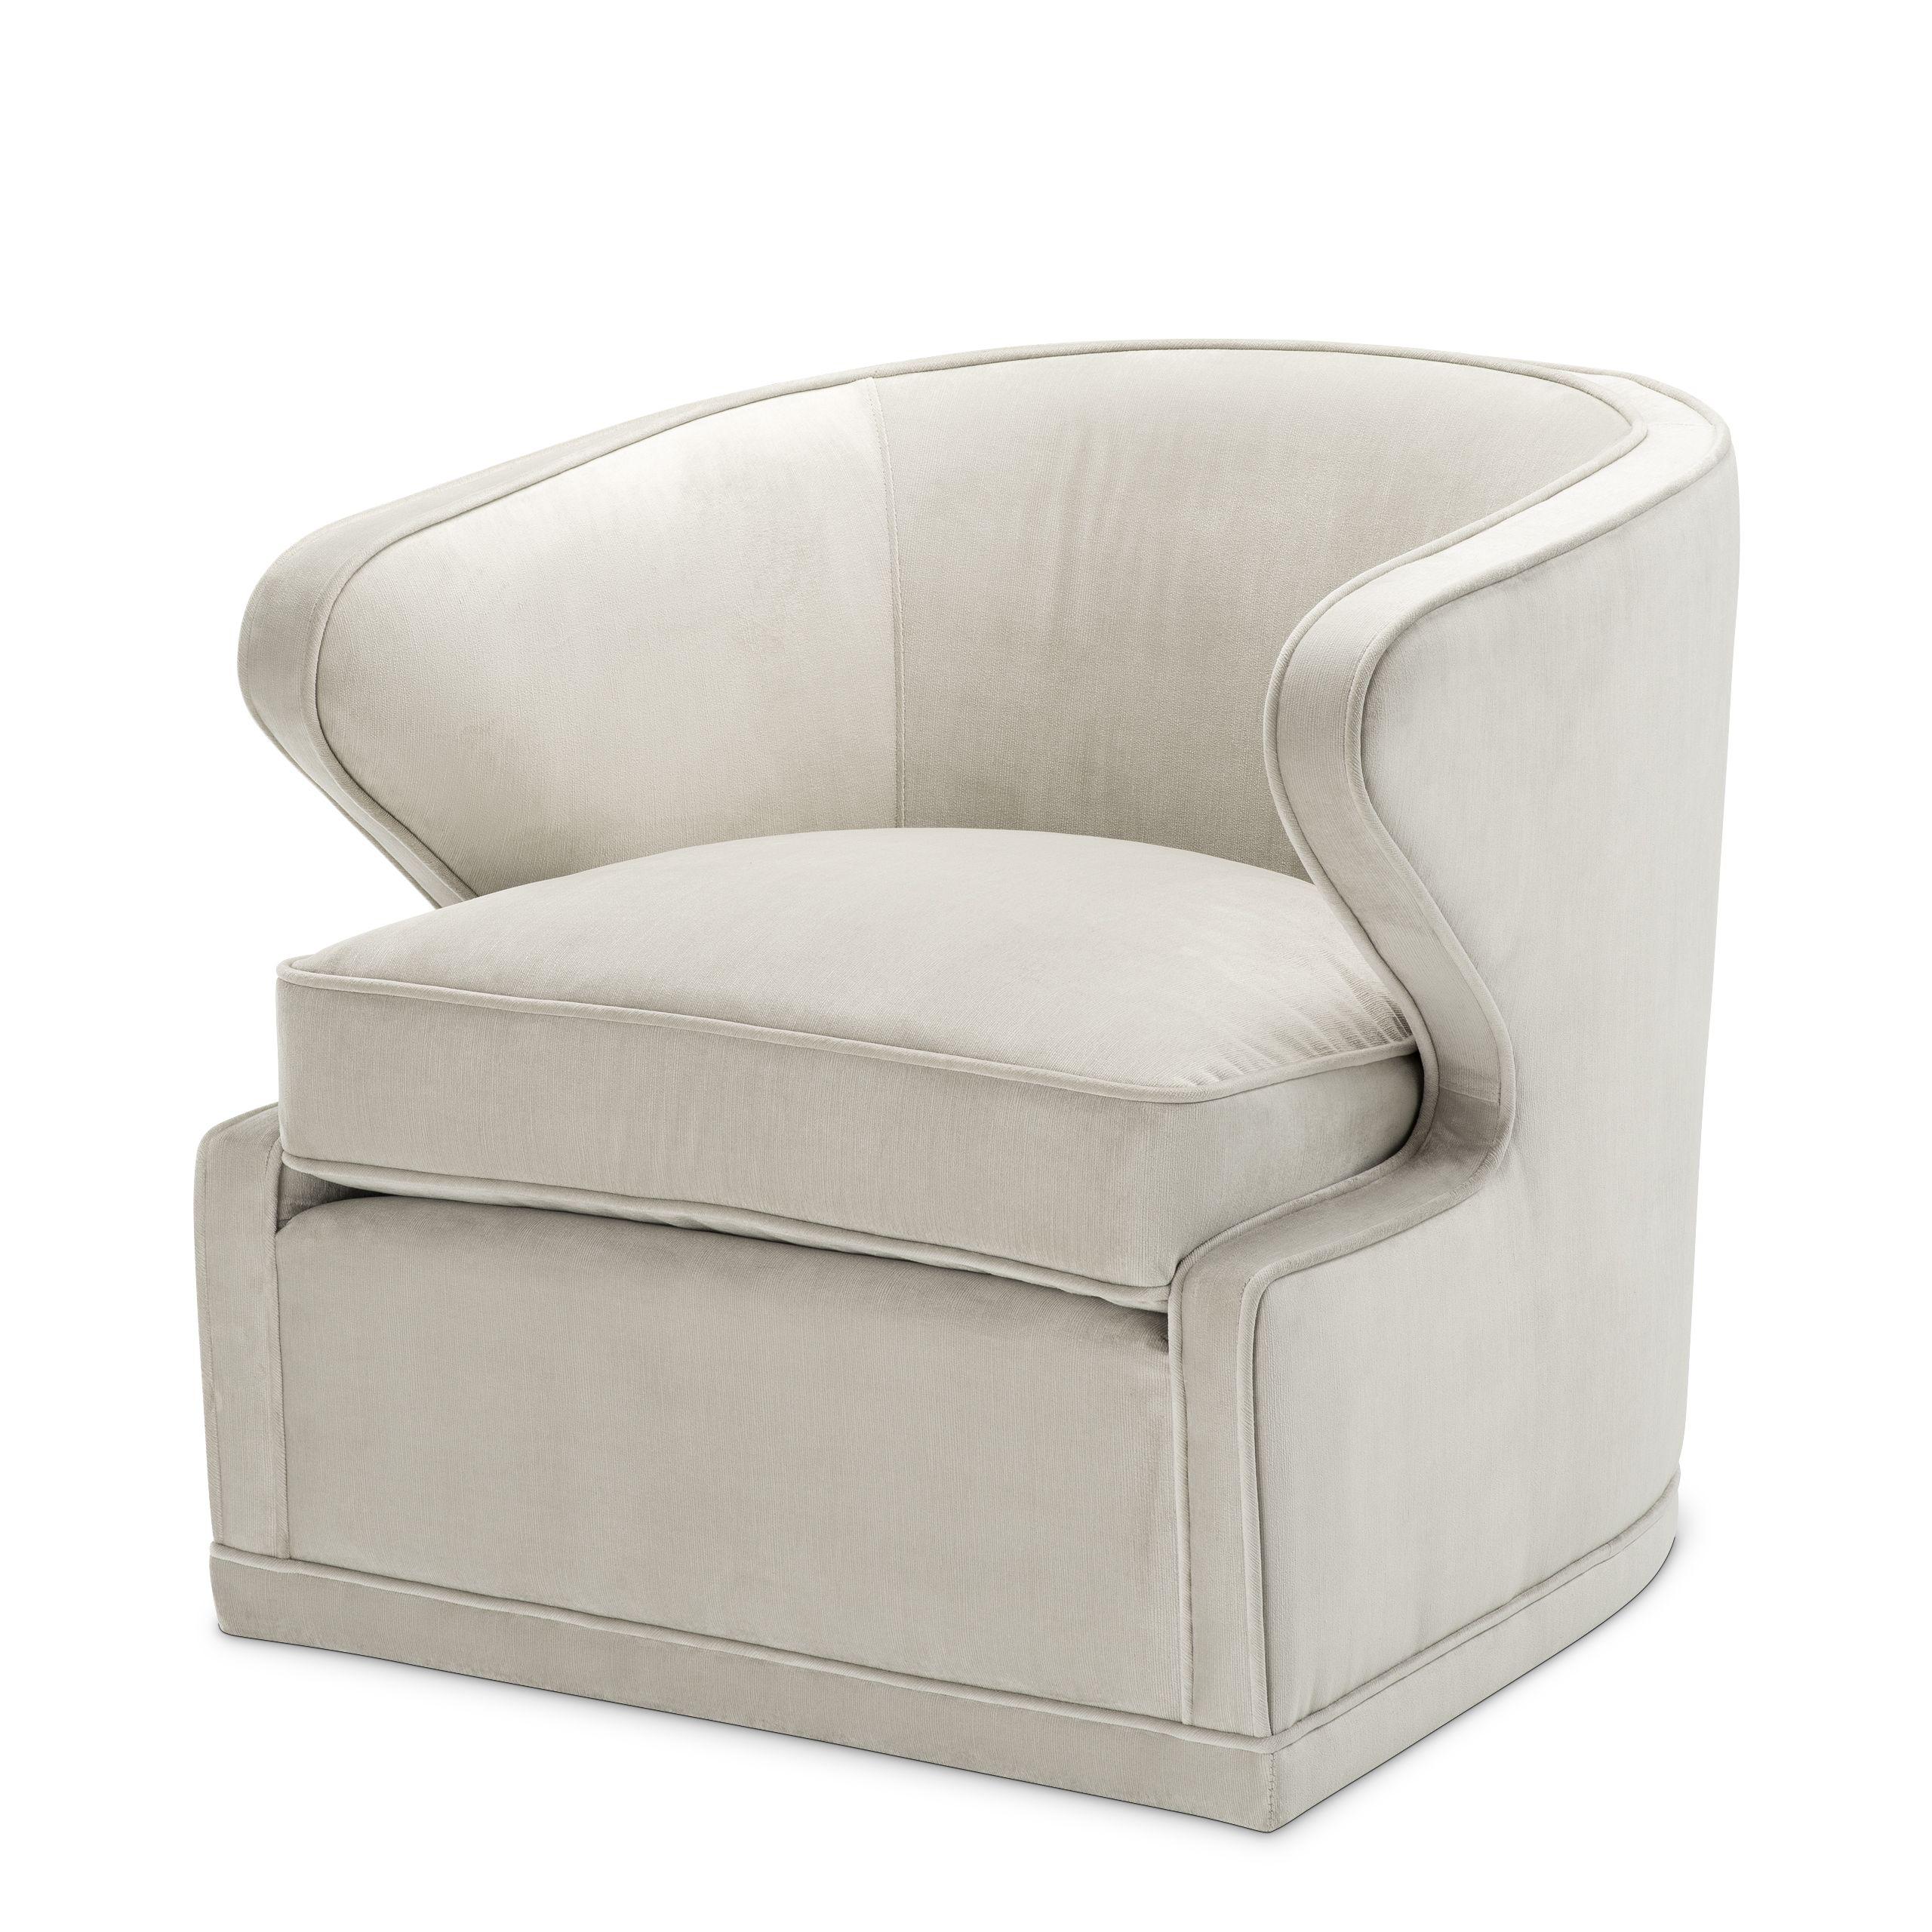 Купить Крутящееся кресло Swivel Chair Dorset в интернет-магазине roooms.ru